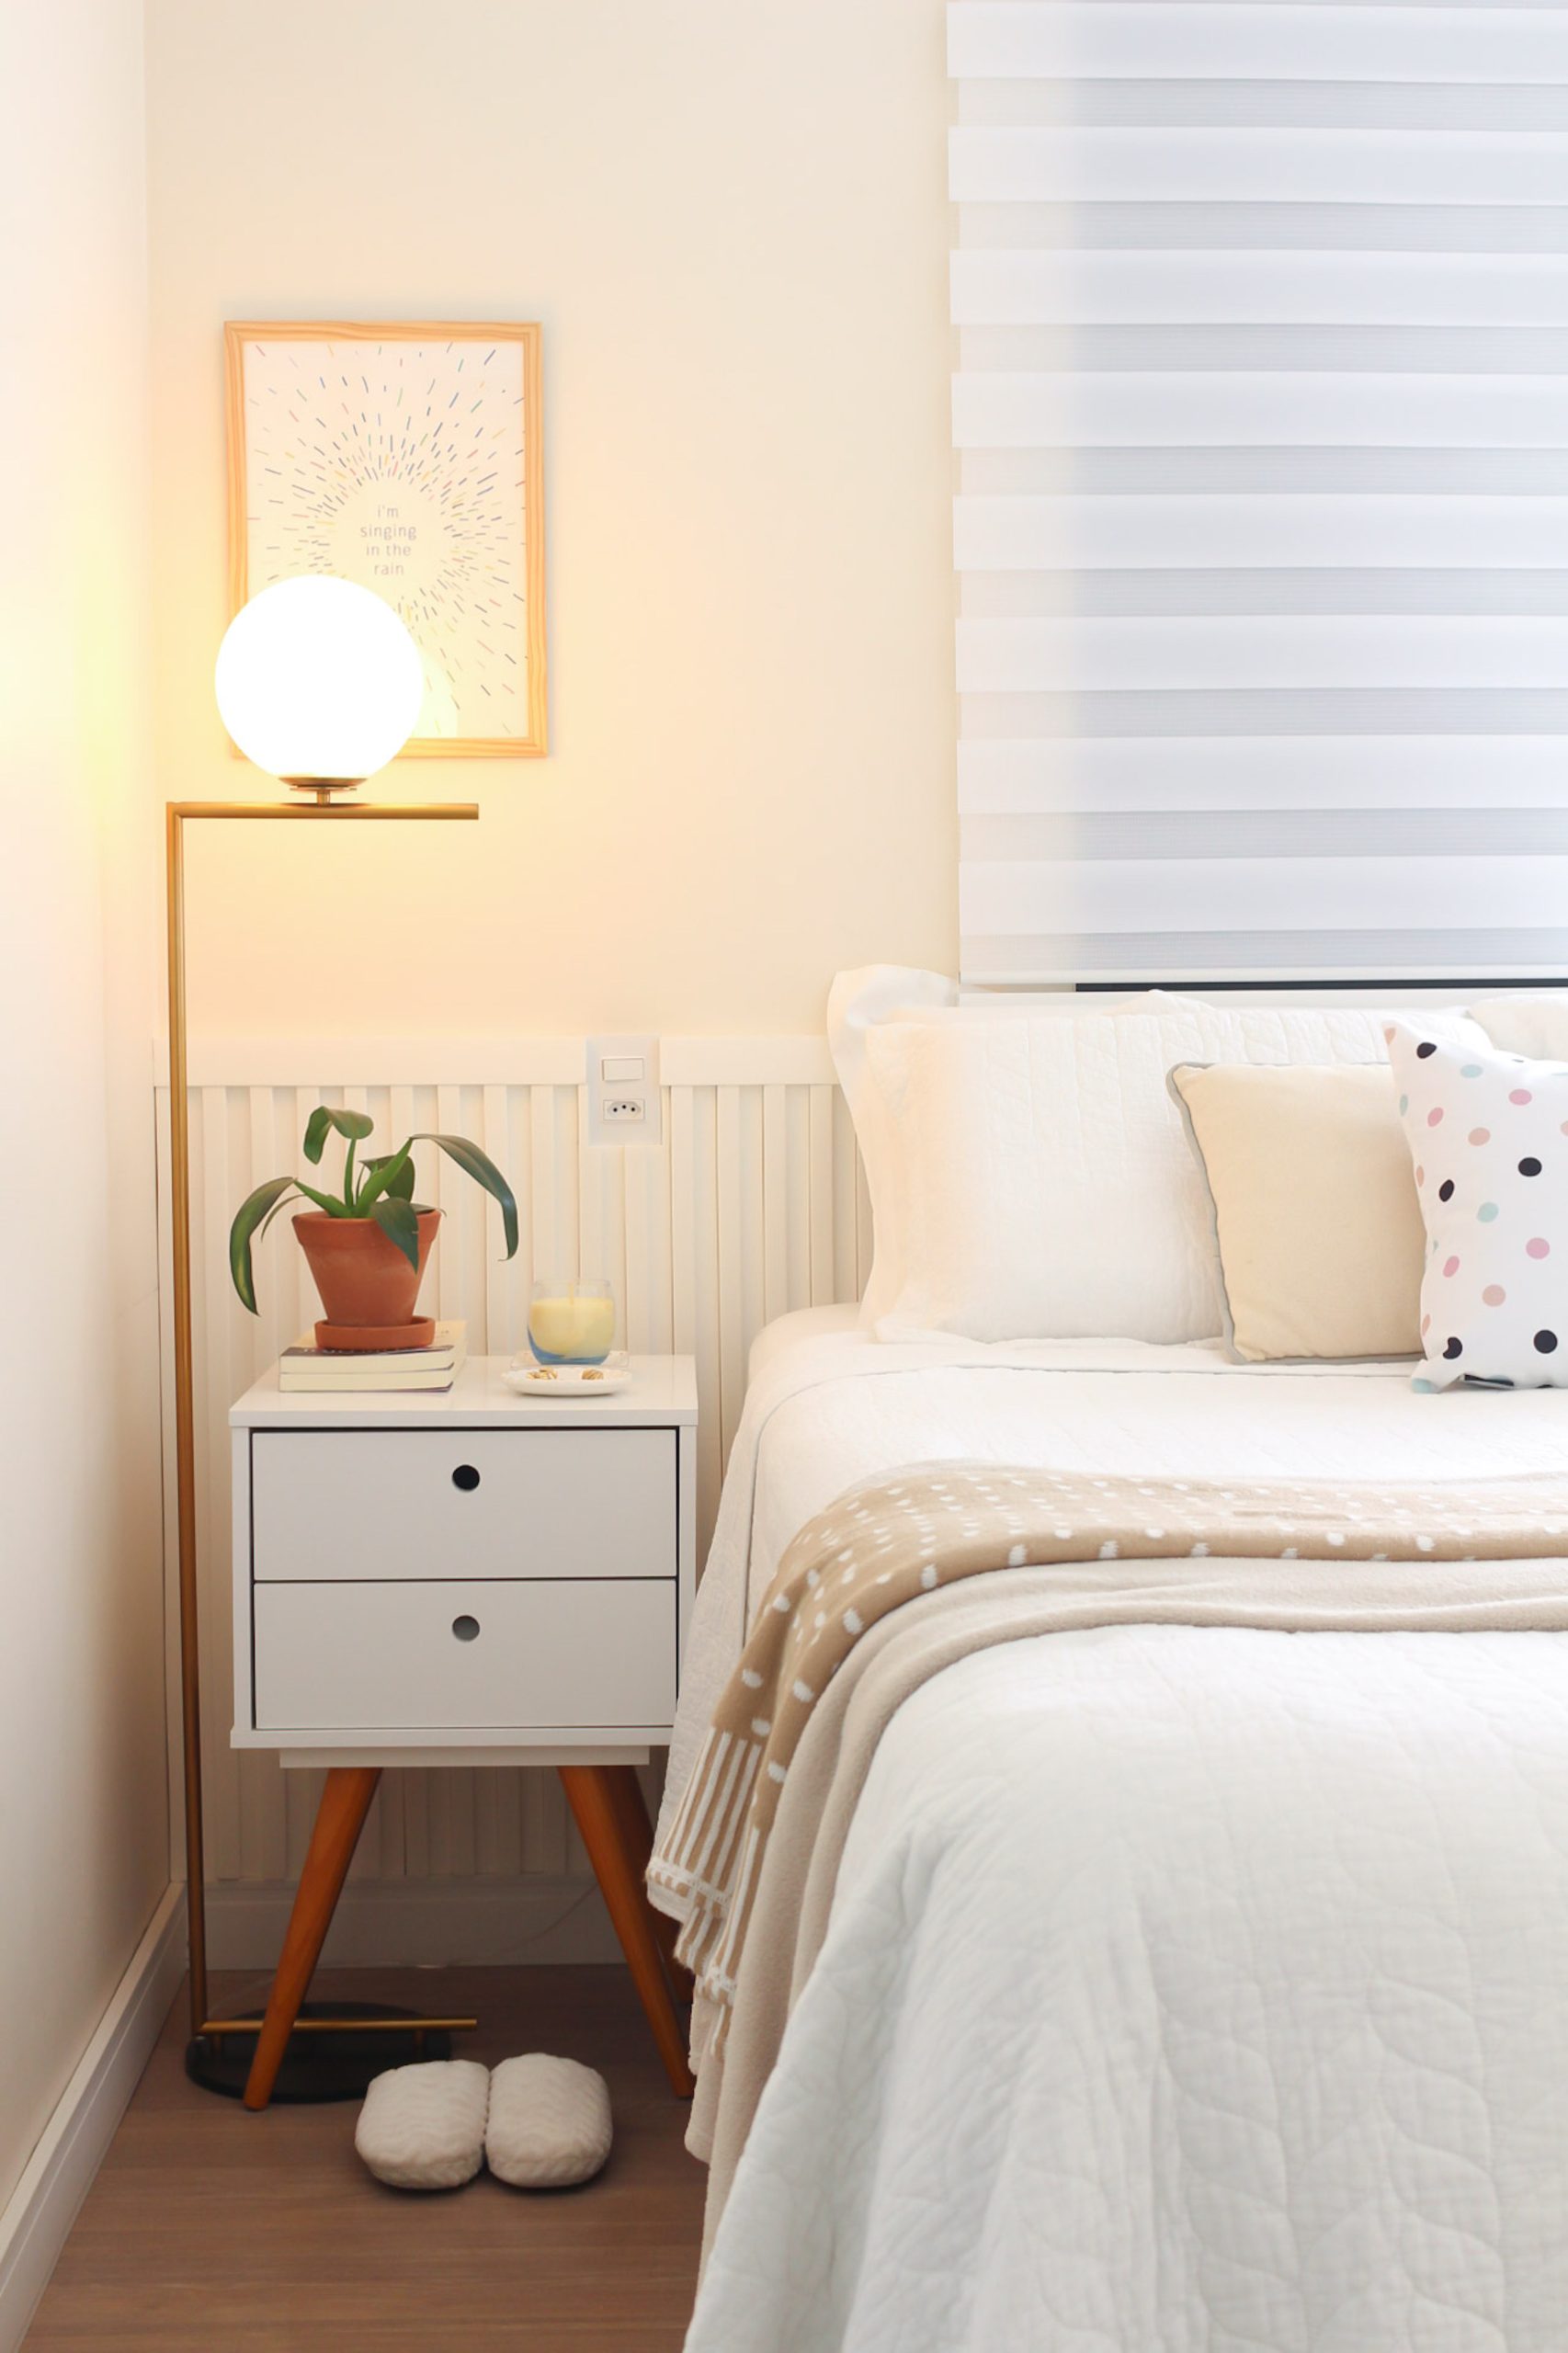 sugestões para decorar um quarto de casal pequeno, usando móveis de tamanho adequado, iluminação e cores claras que ampliam o ambiente.